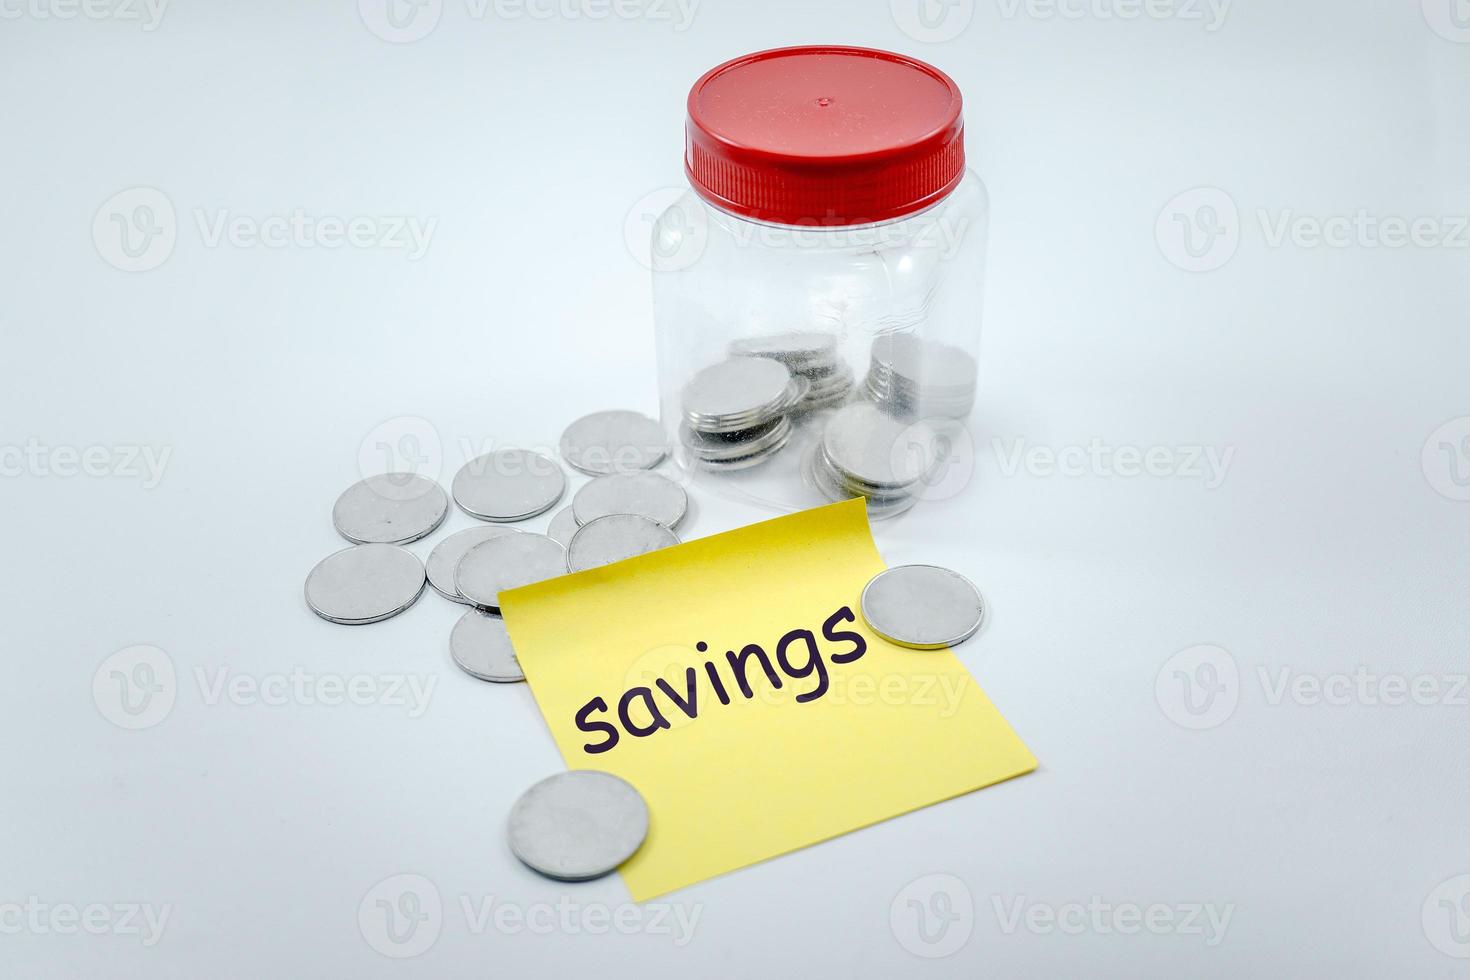 ahorros, monedas dispersas y en frasco de plástico con nota adhesiva que dice ahorros foto